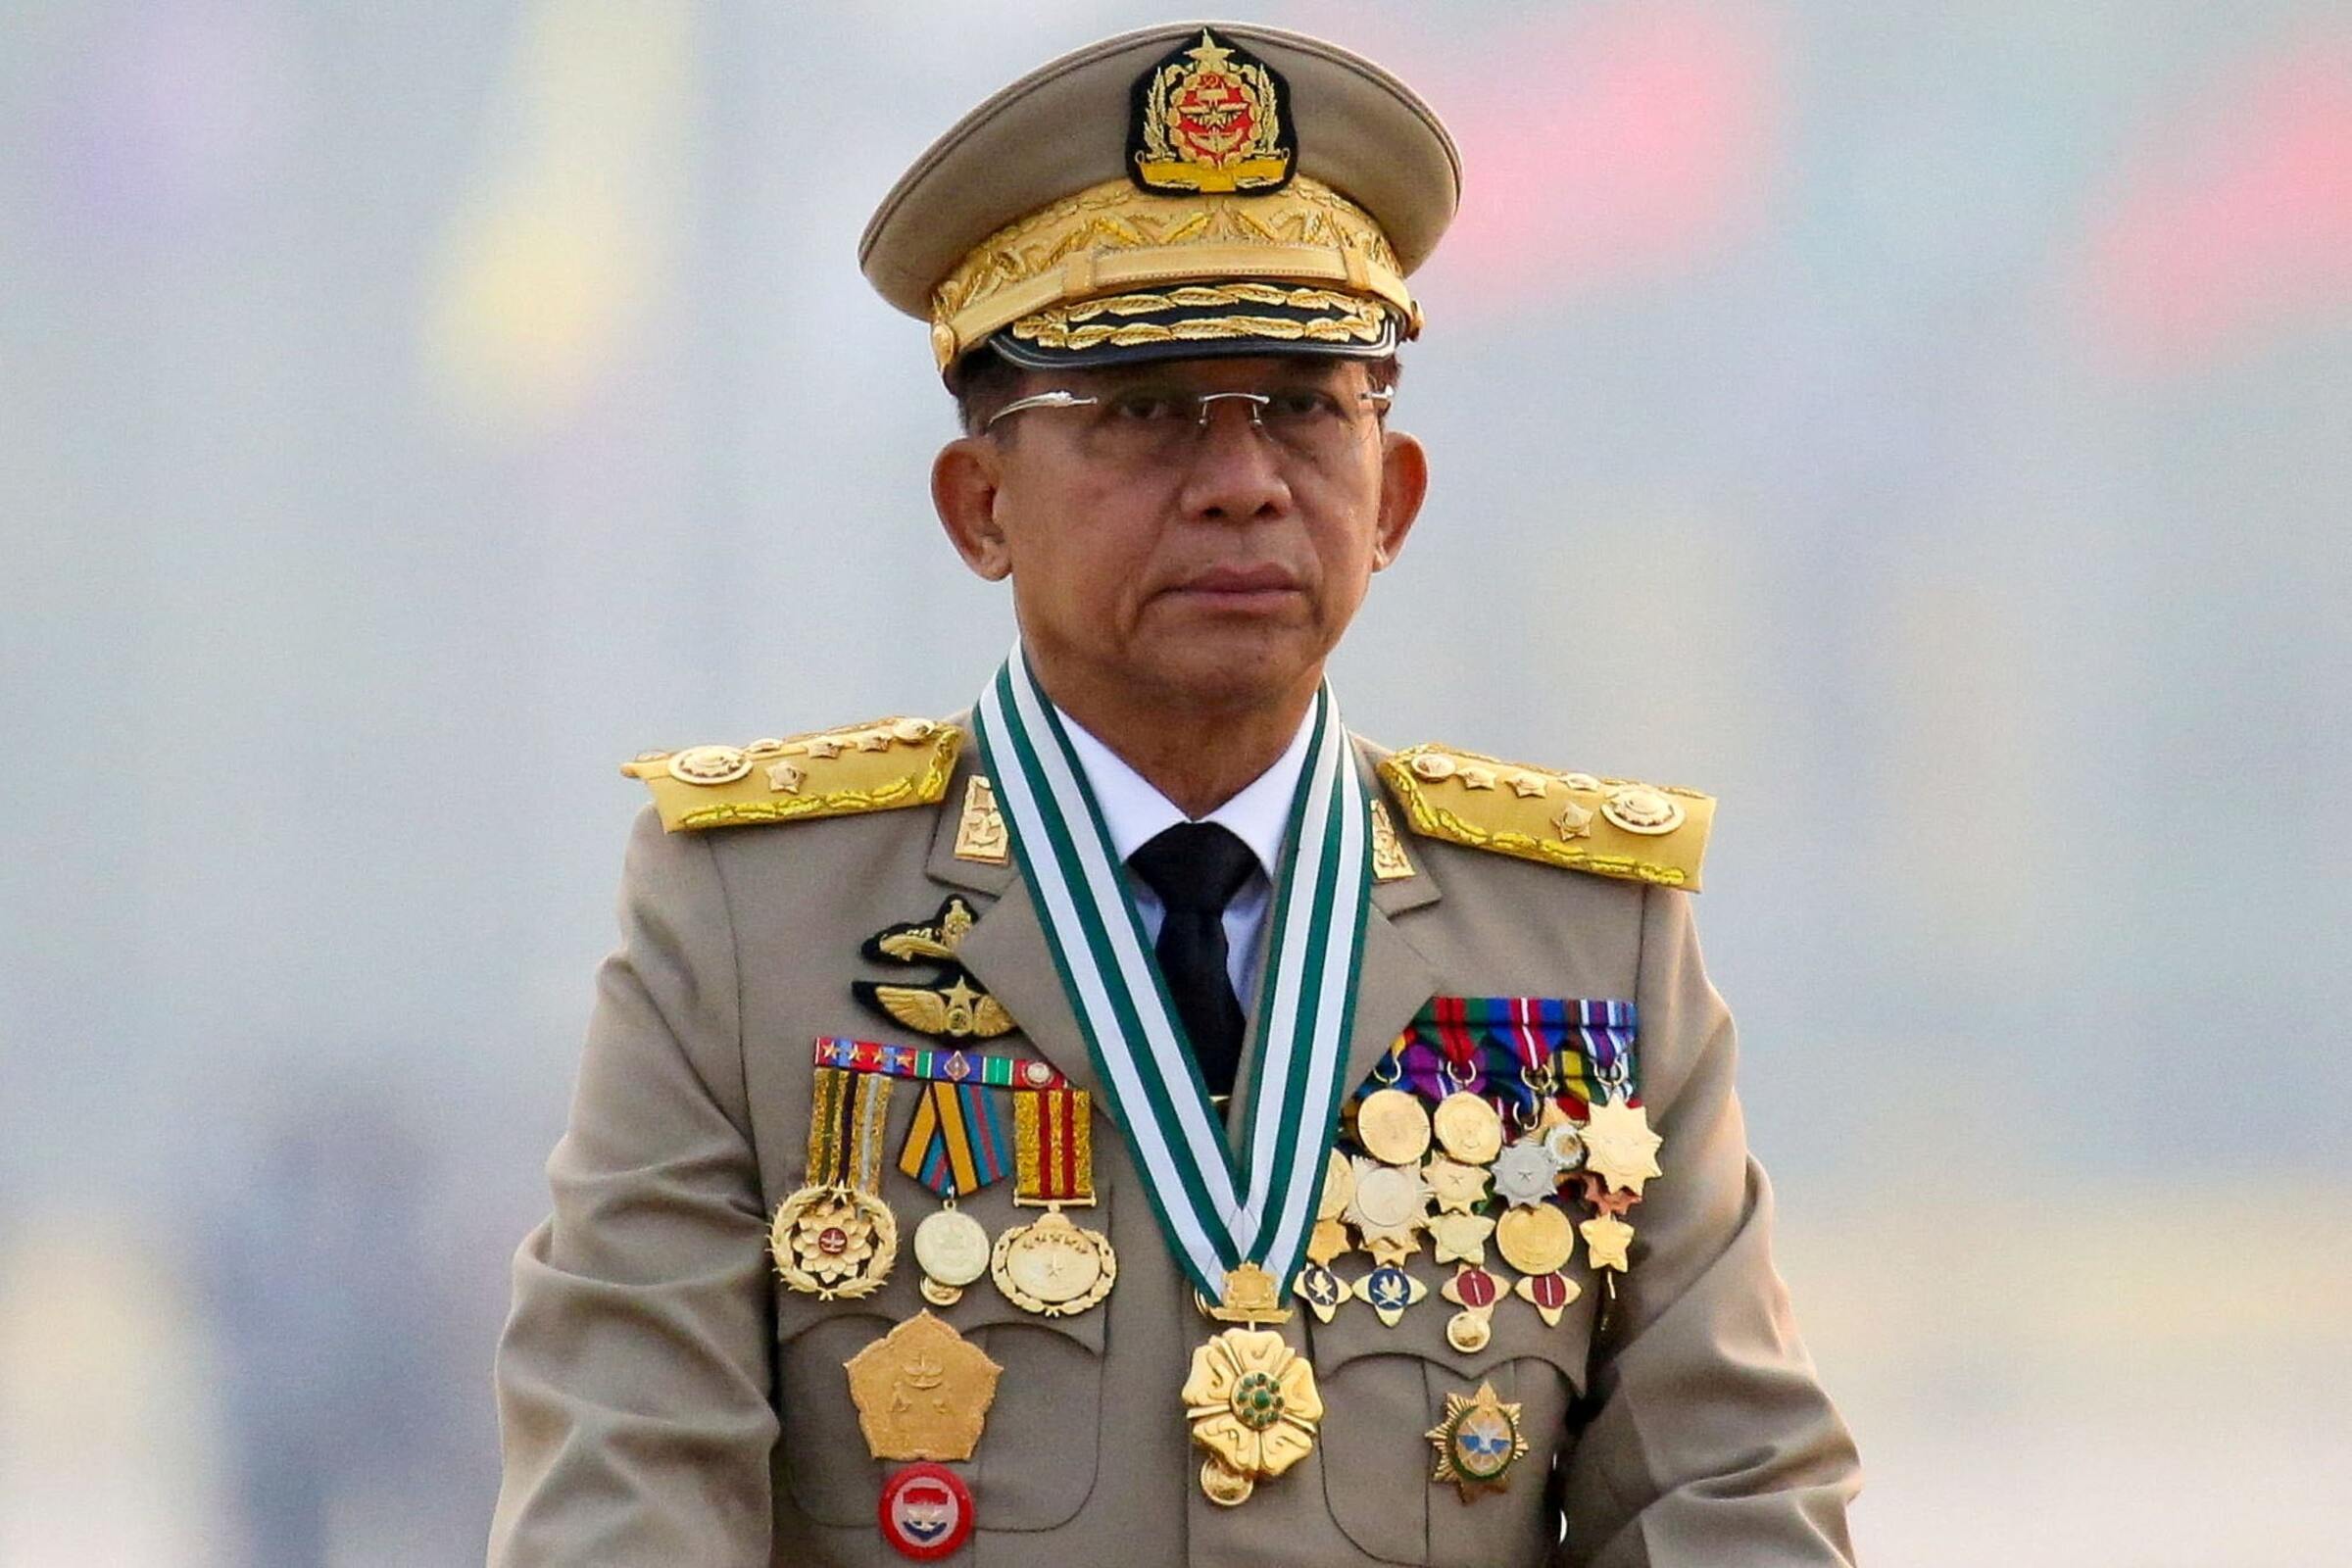 缅甸紧急状态再延长半年  军政府放宽政党参选规则